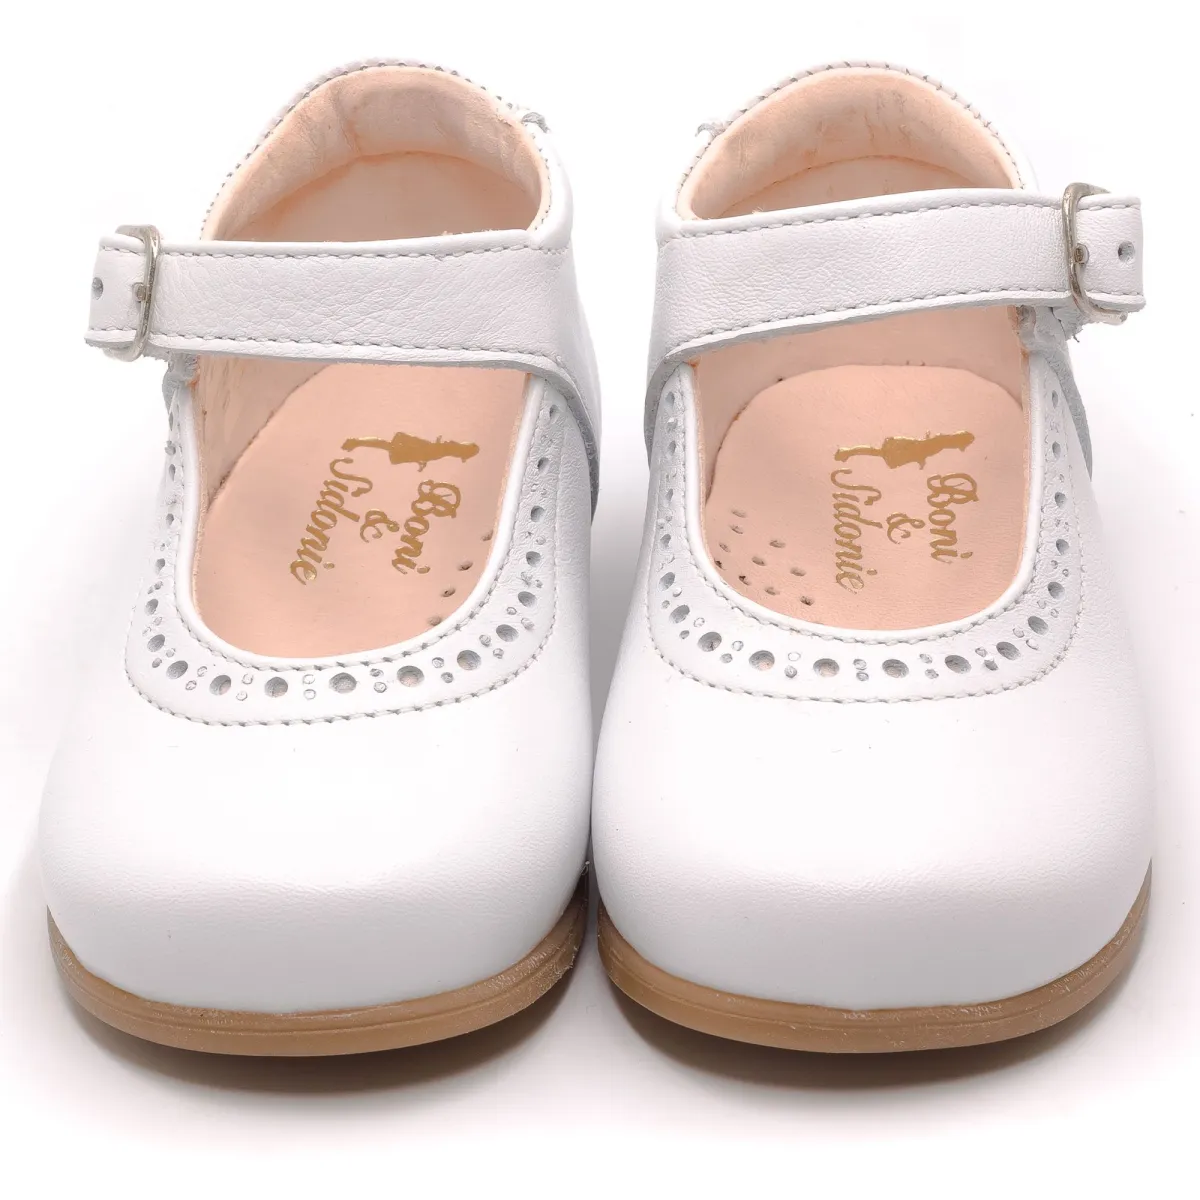 Boni Isabelle - chaussure bebe fille premiers pas